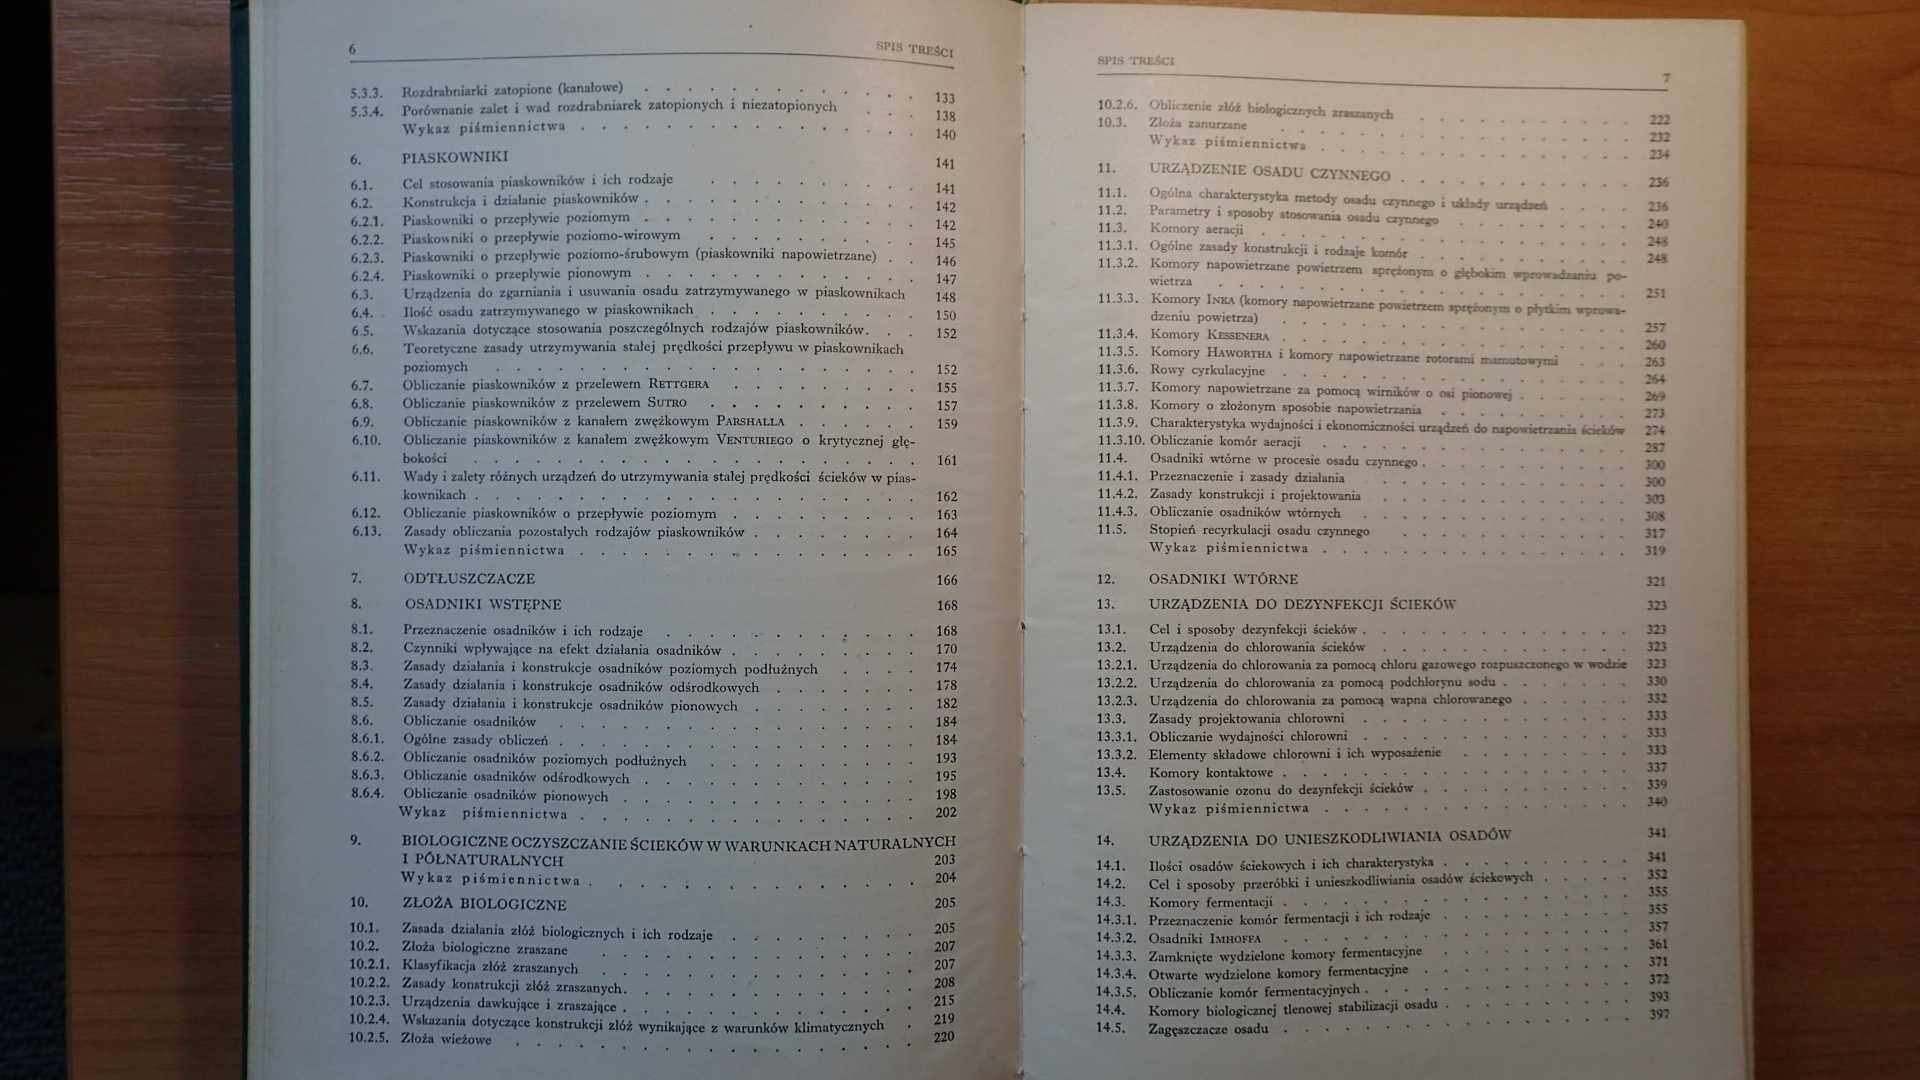 Kanalizacja tom 2 W.Błaszczyk, M.Roman, H.Stamatello; Arkady 1974